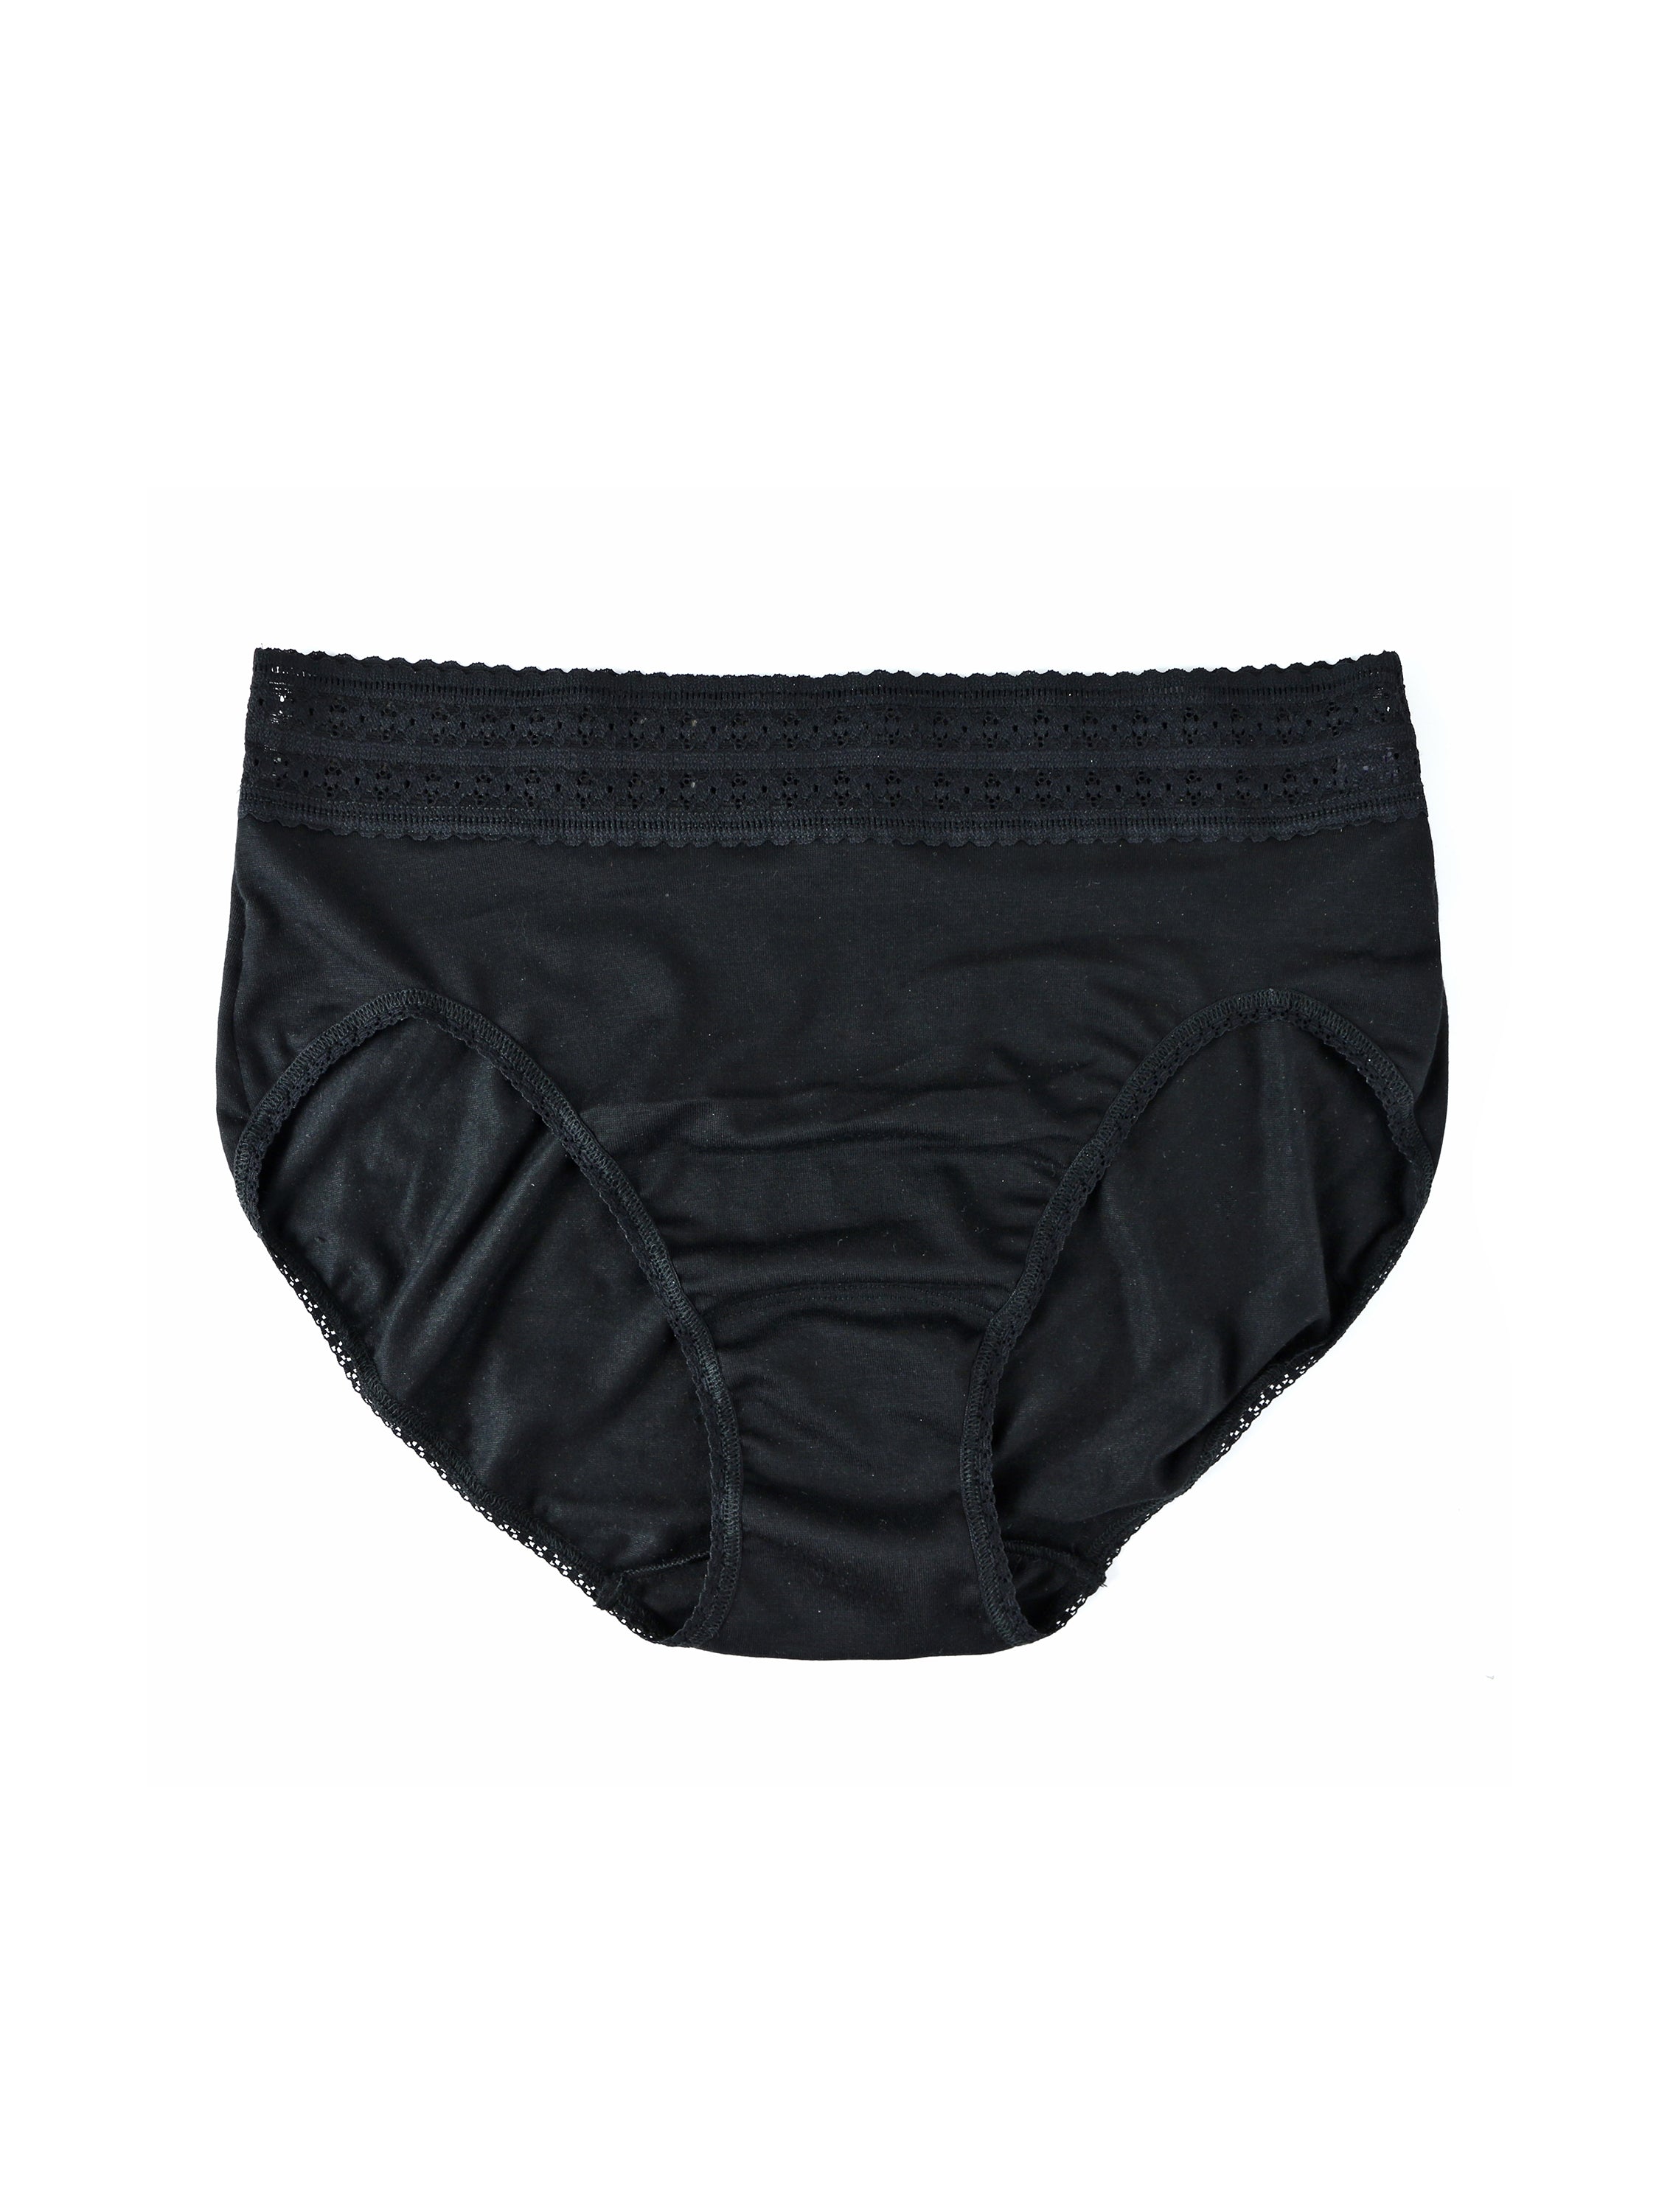 Hanky Panky Women's Dream Brazilian Bikini Underwear - Macy's